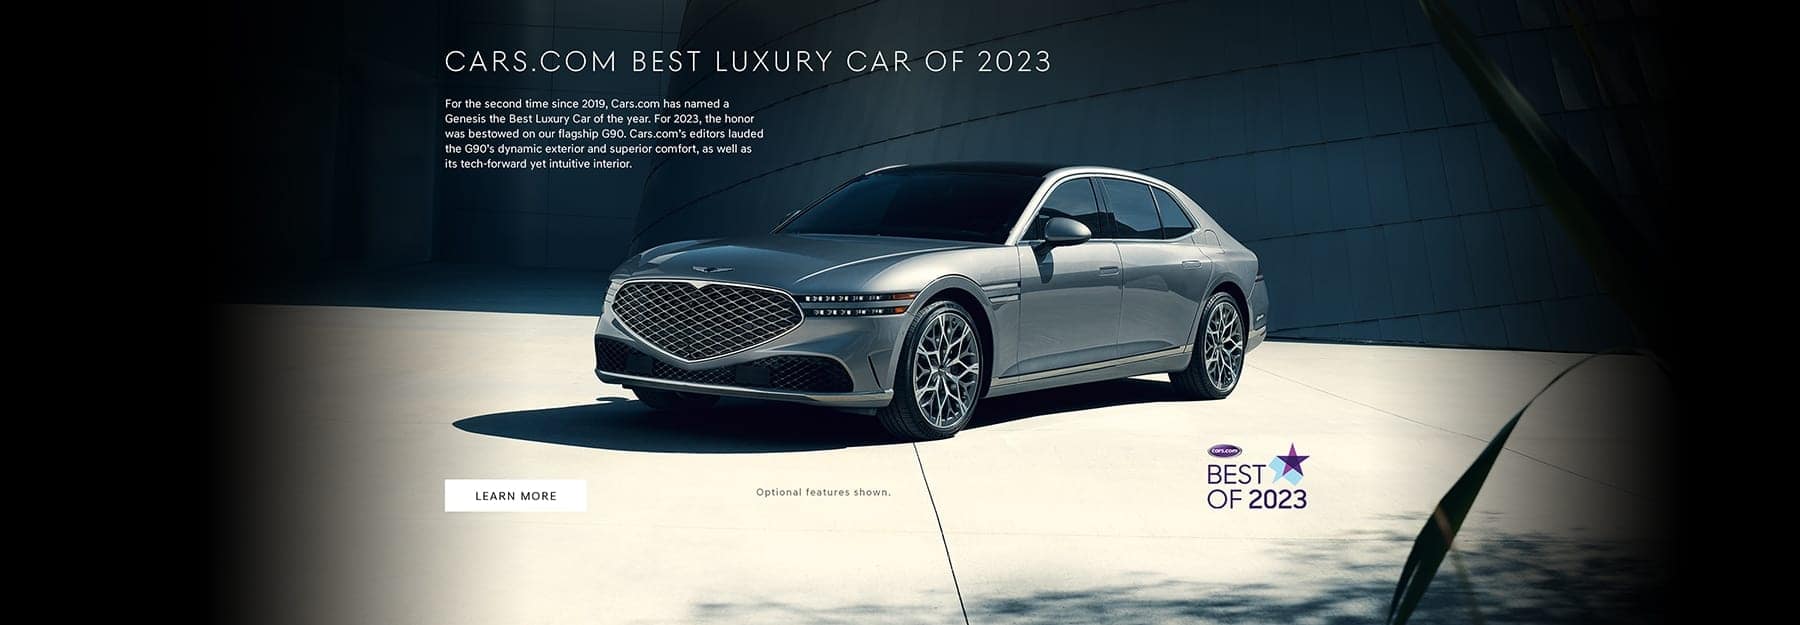 Cars.com Best Luxury Sedan of 2023